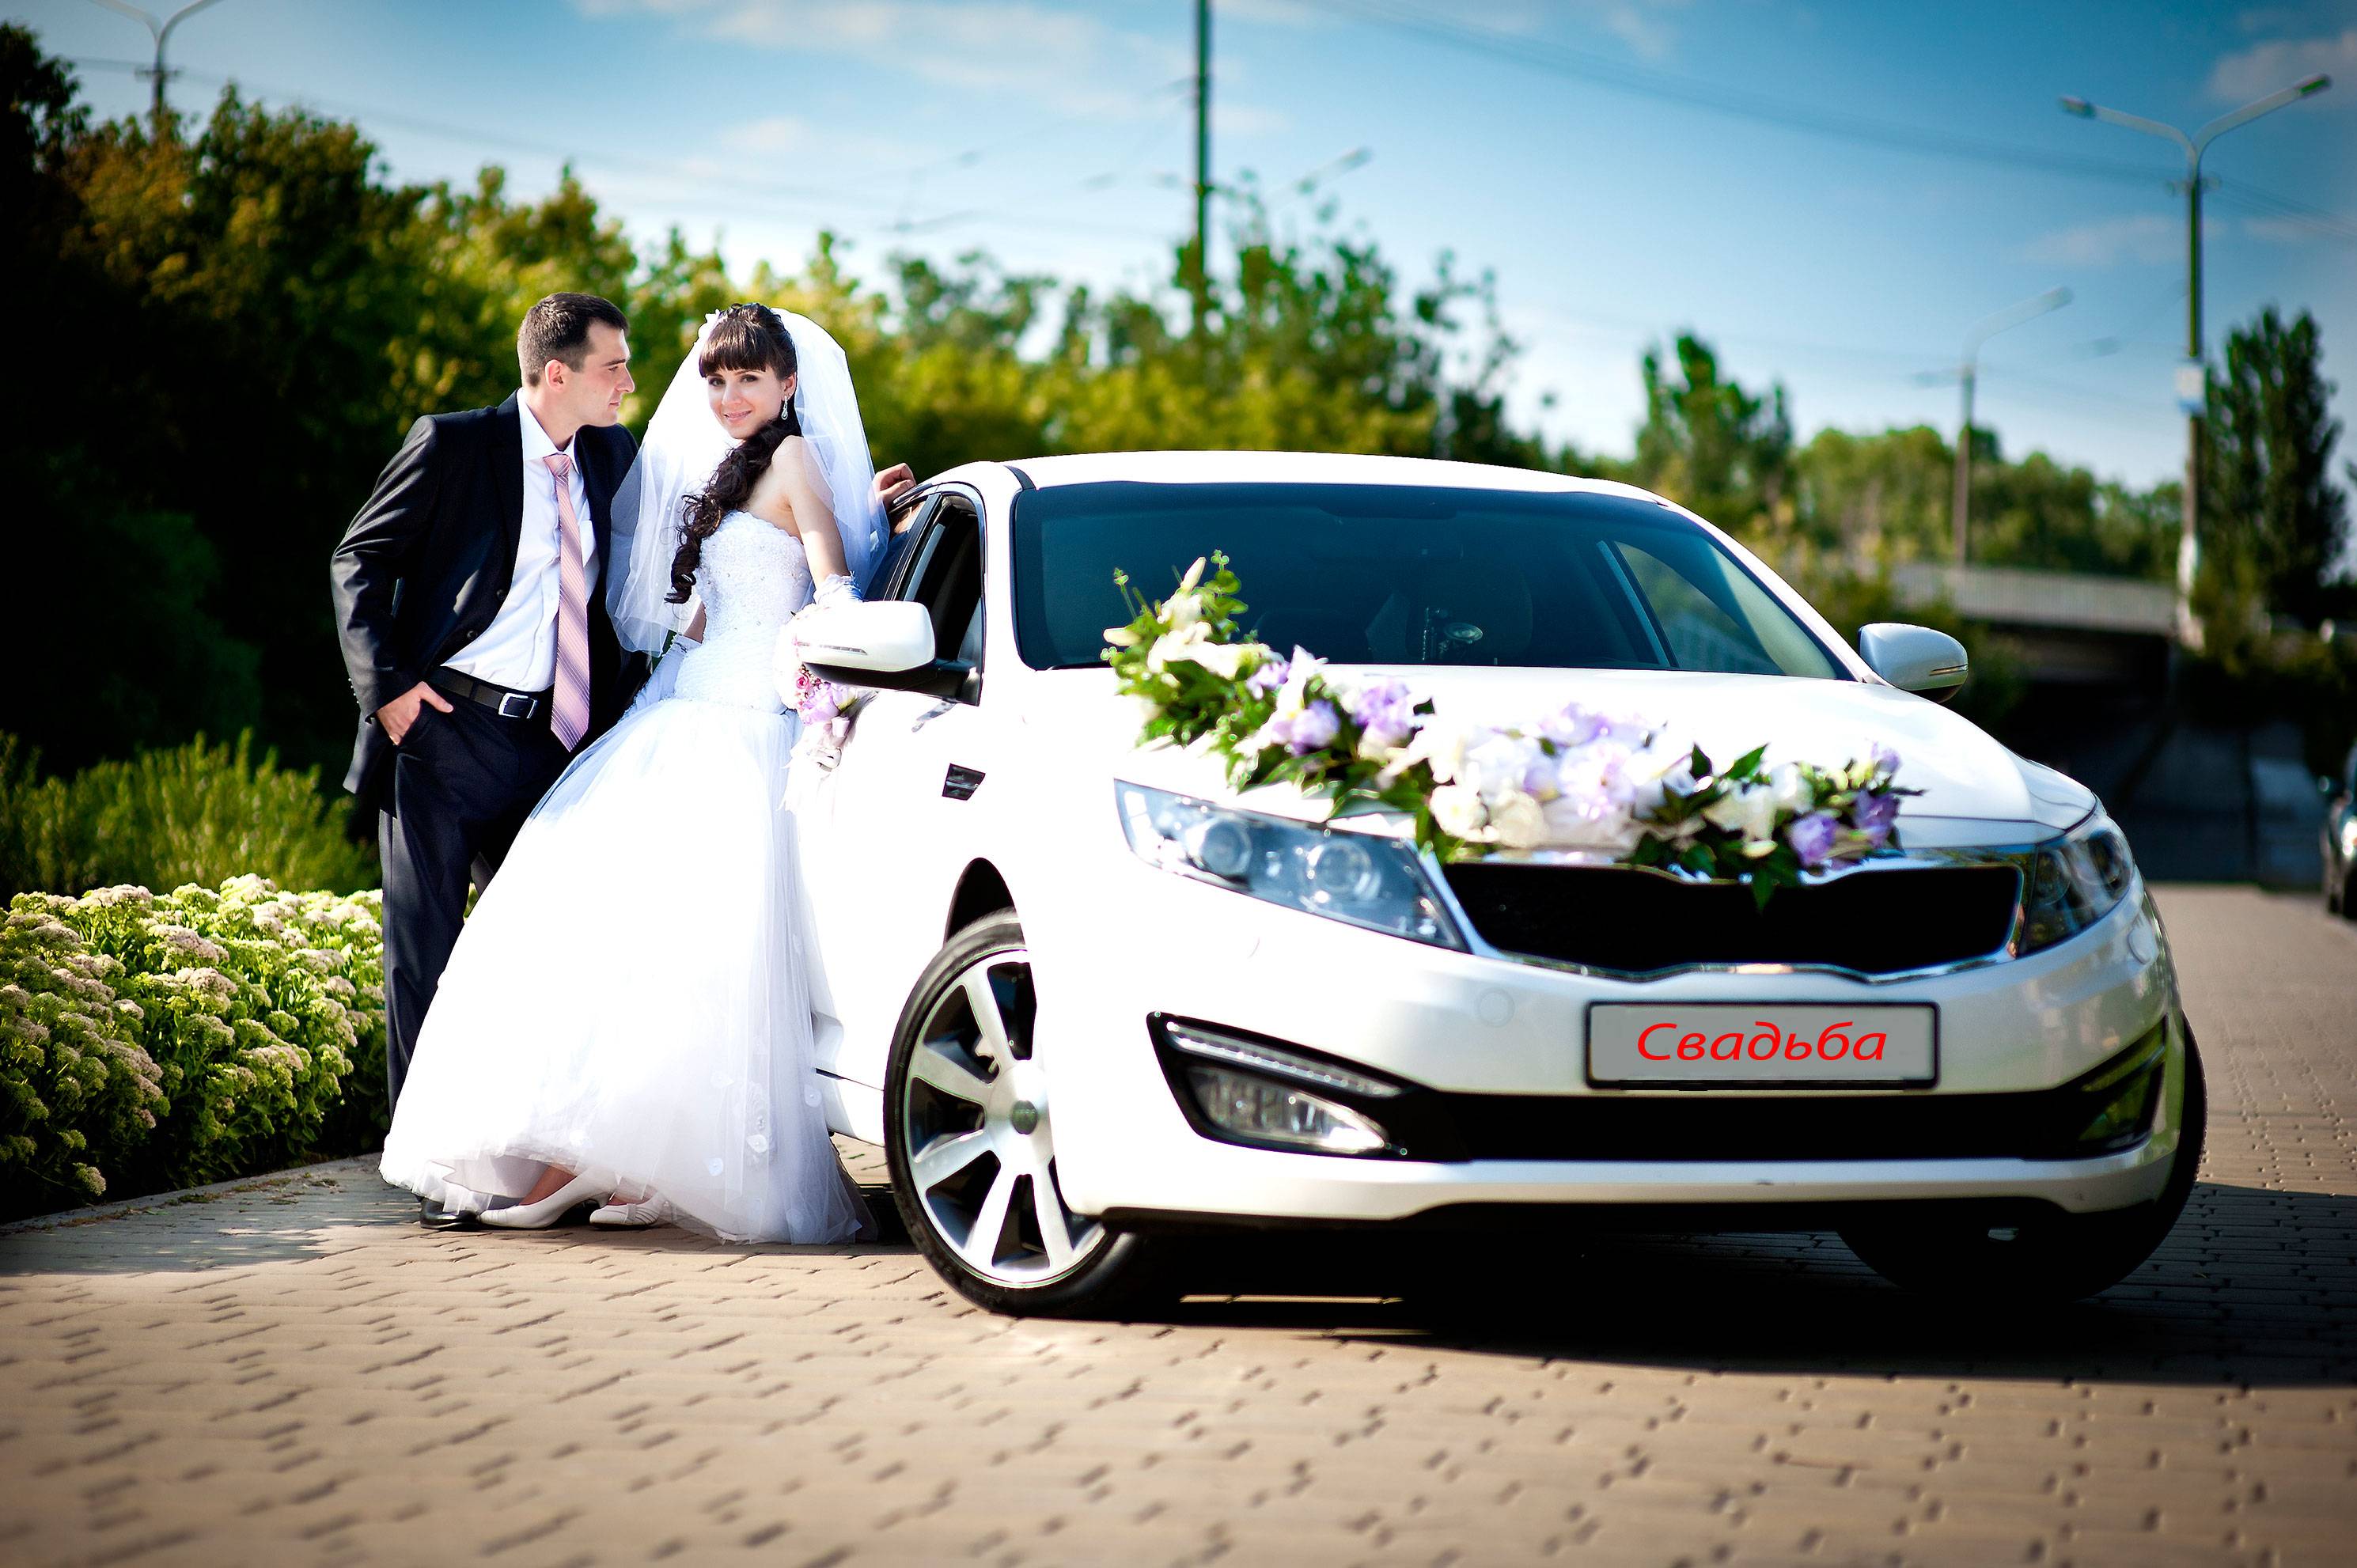 Машины на свадьбу — аренда авто для жениха и невесты под заказ. прокат автомобилей гостей для свадебного кортежа. кабриолет, хаммер, такси, газель и другой транспорт